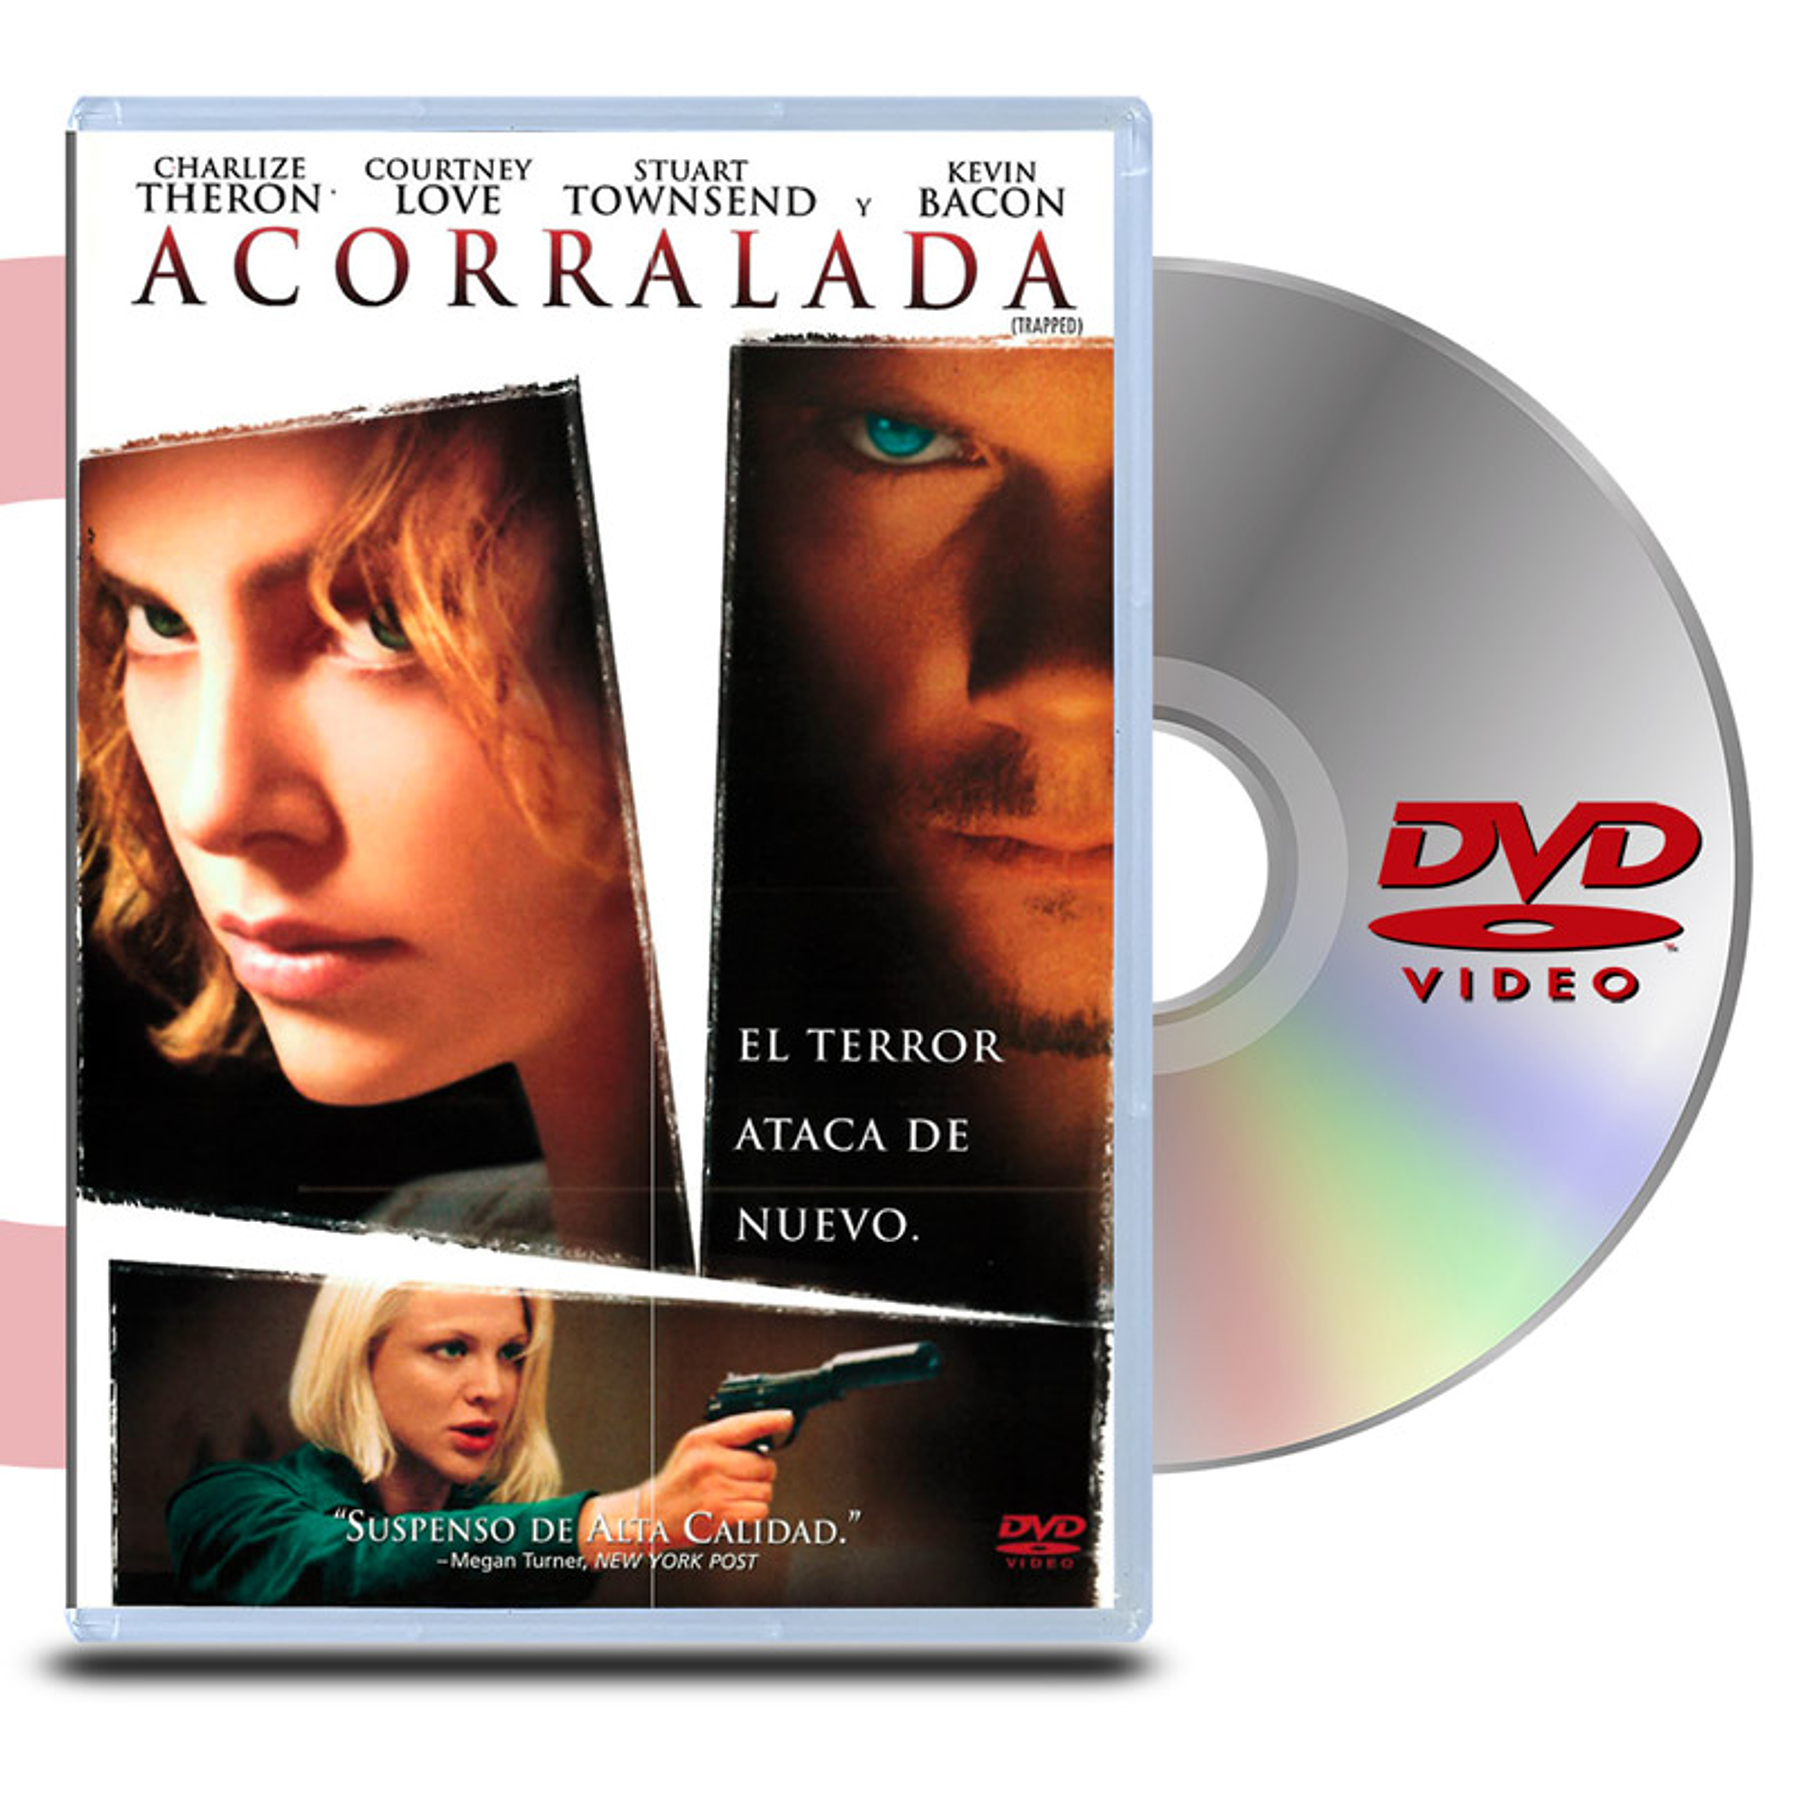 DVD ACORRALADA